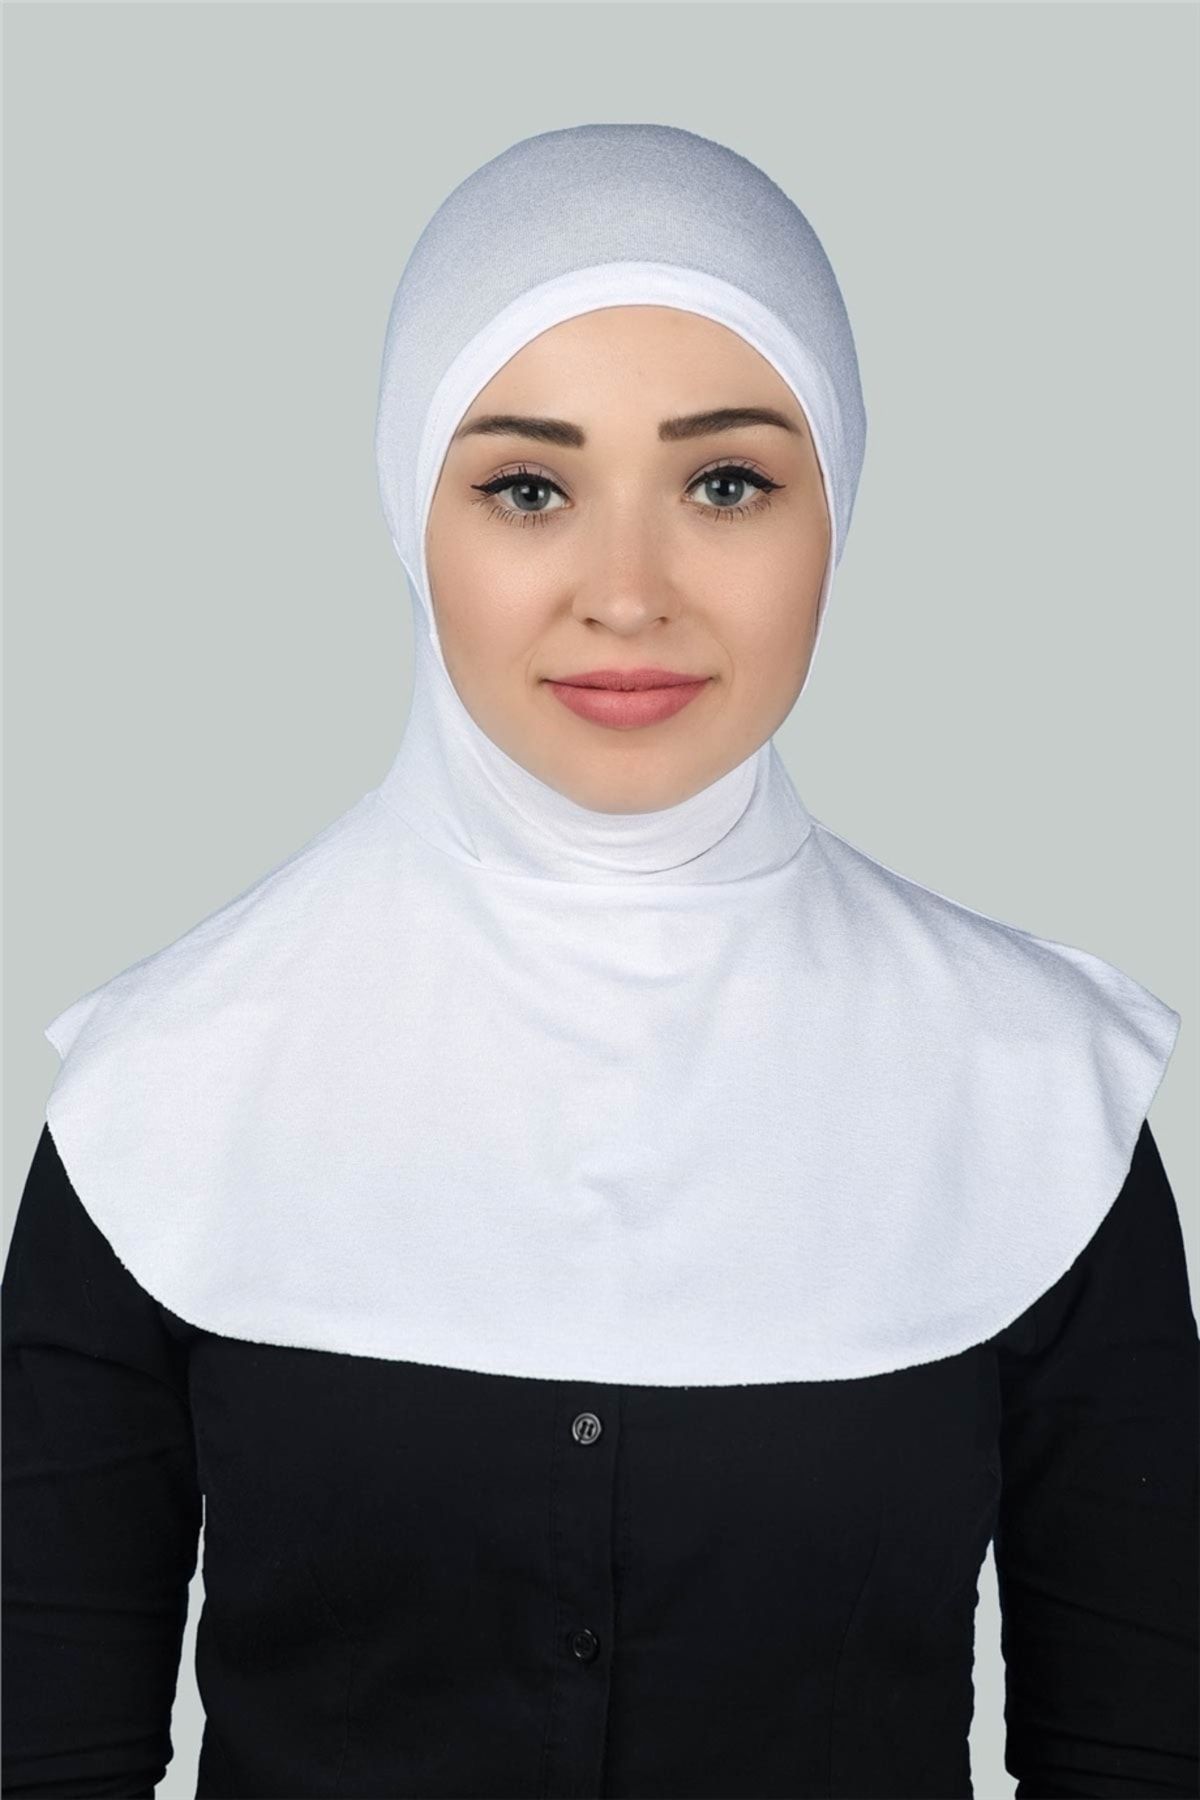 Altobeh Kadın Tesettür Pratik Boyunluklu Hijab - Sporcu Bone - Beyaz